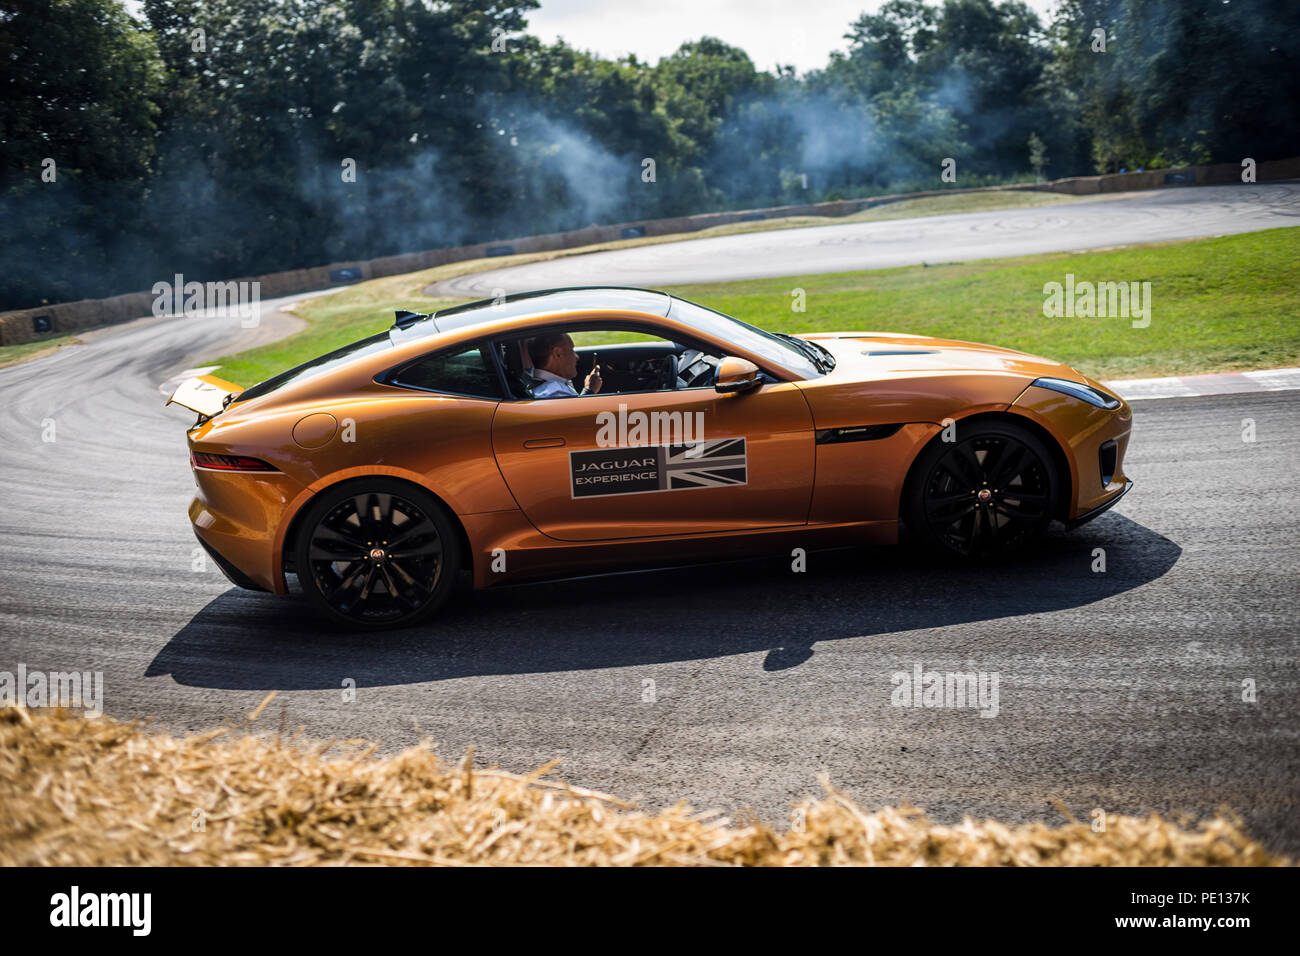 Un Jaguar sportscar tourne ses pneus, créant de la fumée, sur une piste à la Goodwood Festival of Speed 2018. Banque D'Images